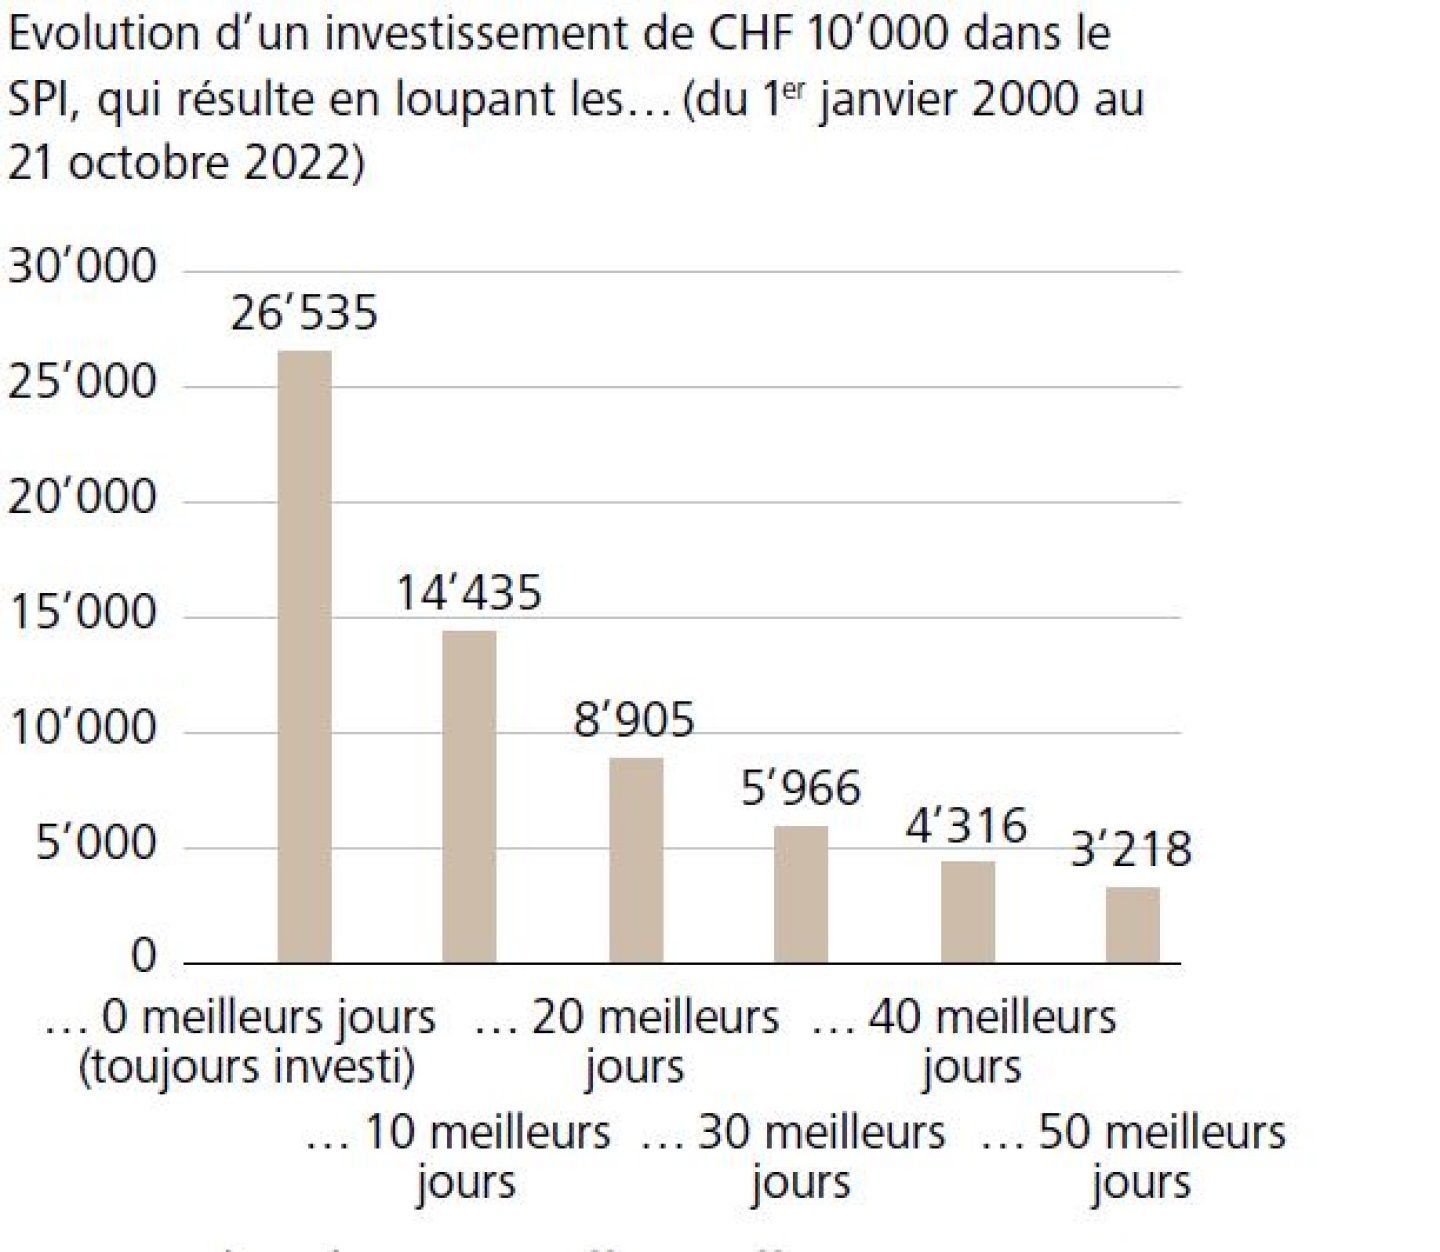 Evolution d'un investissement de CHF 10'000 dans le SPI, qui résulte en loupant